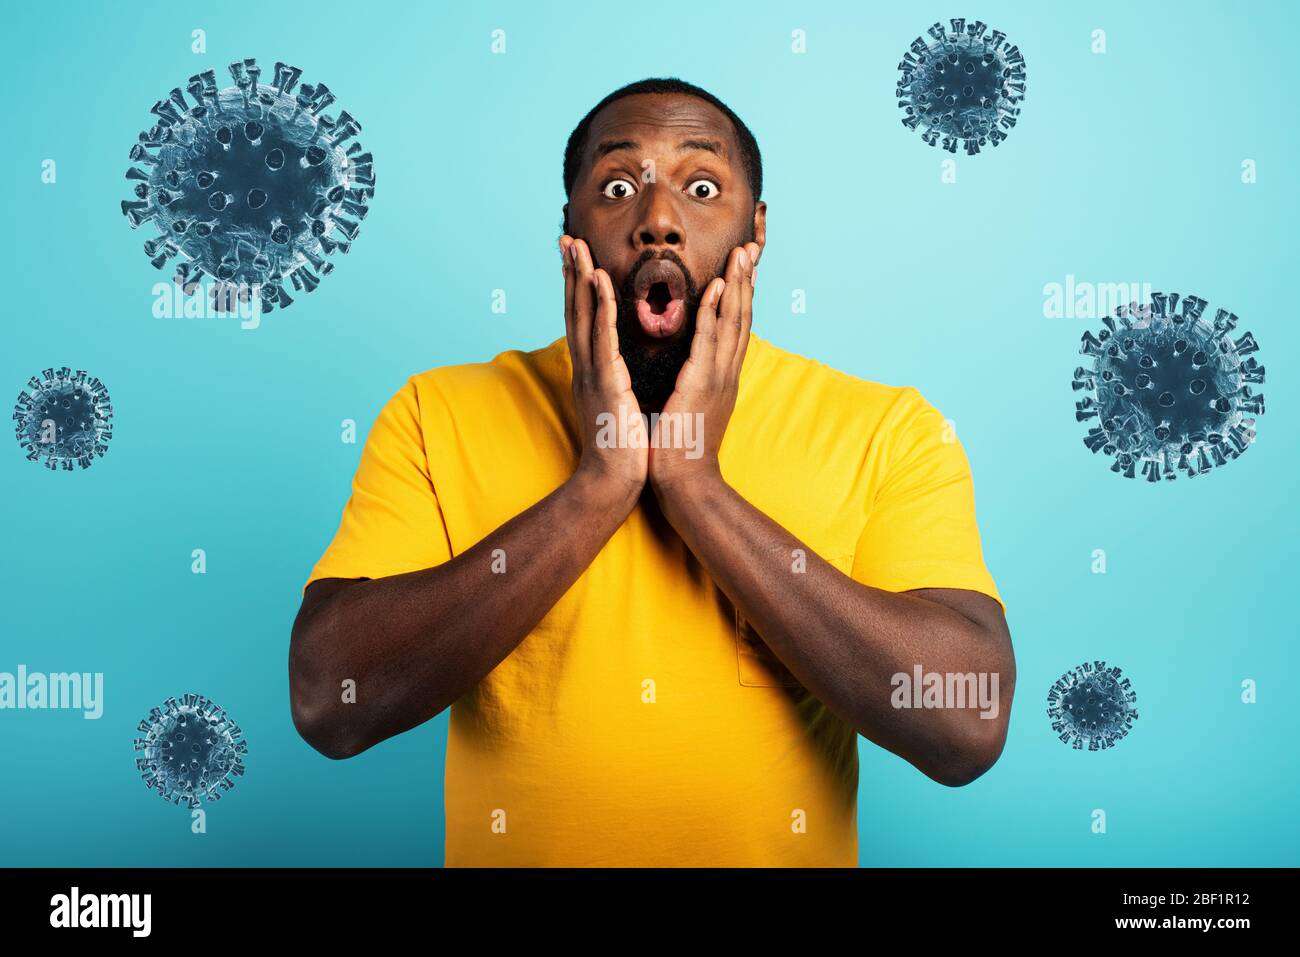 Ängstlicher Ausdruck eines Jungen, der Angst hat, das Coronavirus zu fangen. Hintergrund Zyan. Stockfoto